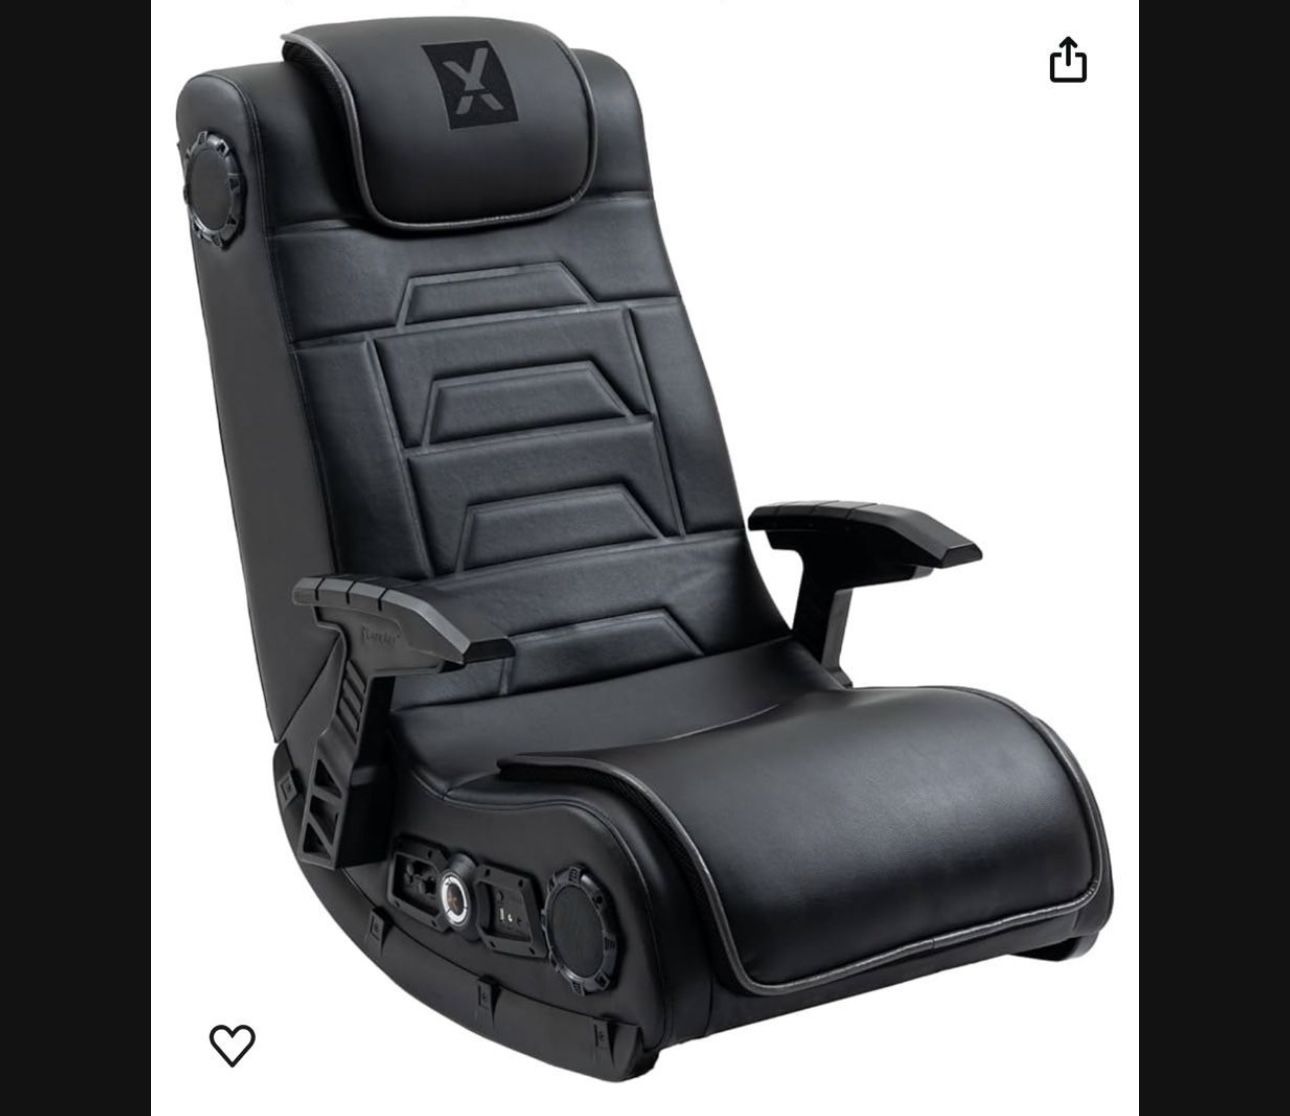 X Rocker Pro Floor Gaming Chair 